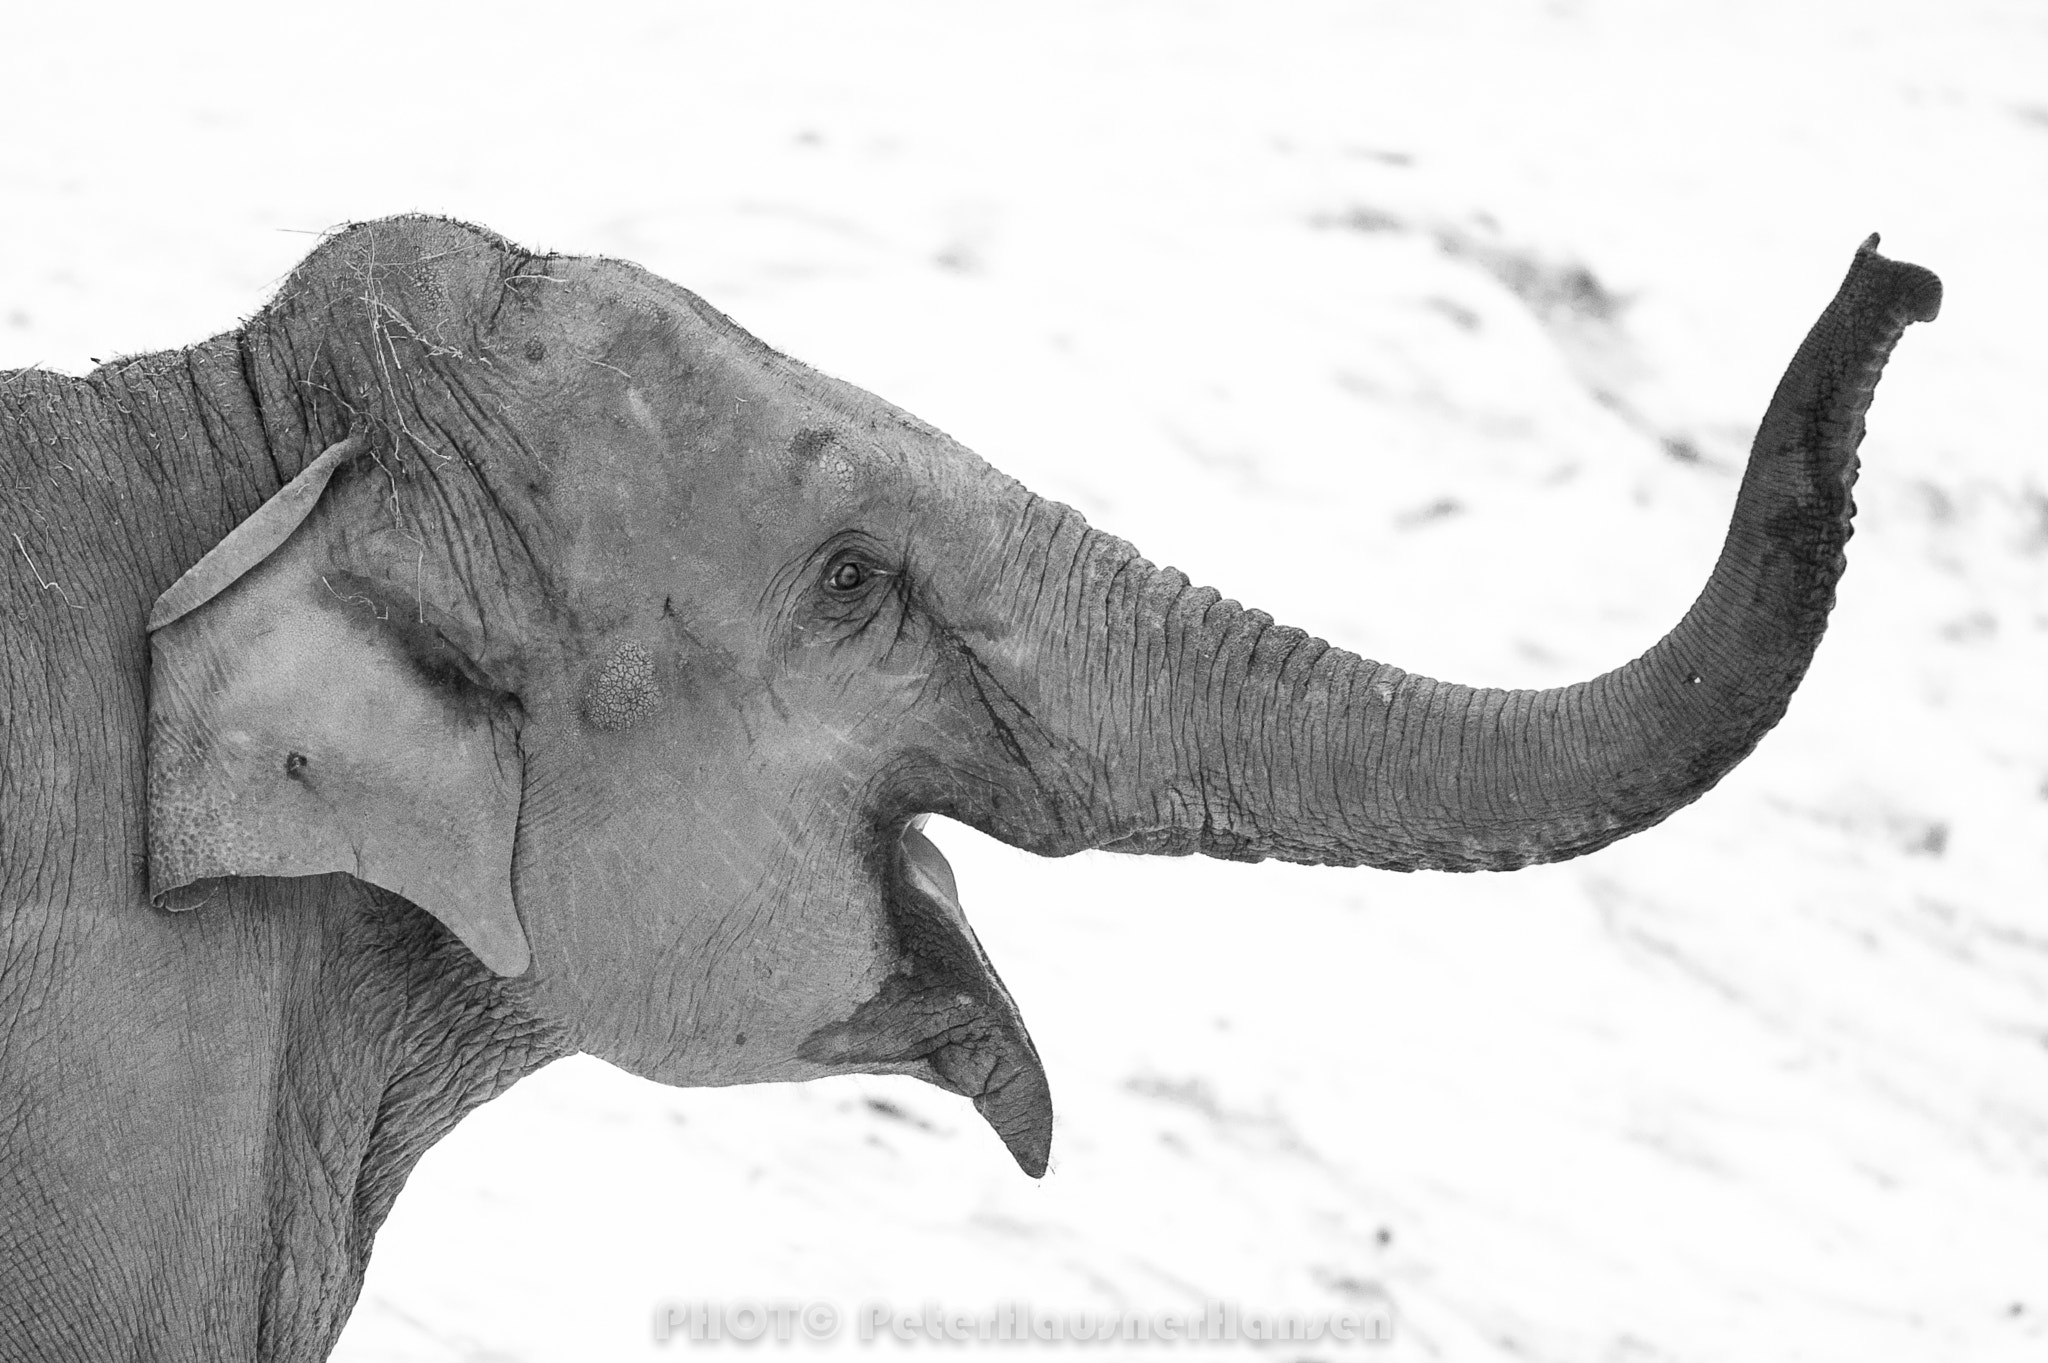 Nikon D3 + Nikon AF-S Nikkor 200-400mm F4G ED-IF VR sample photo. Happy elefant photography